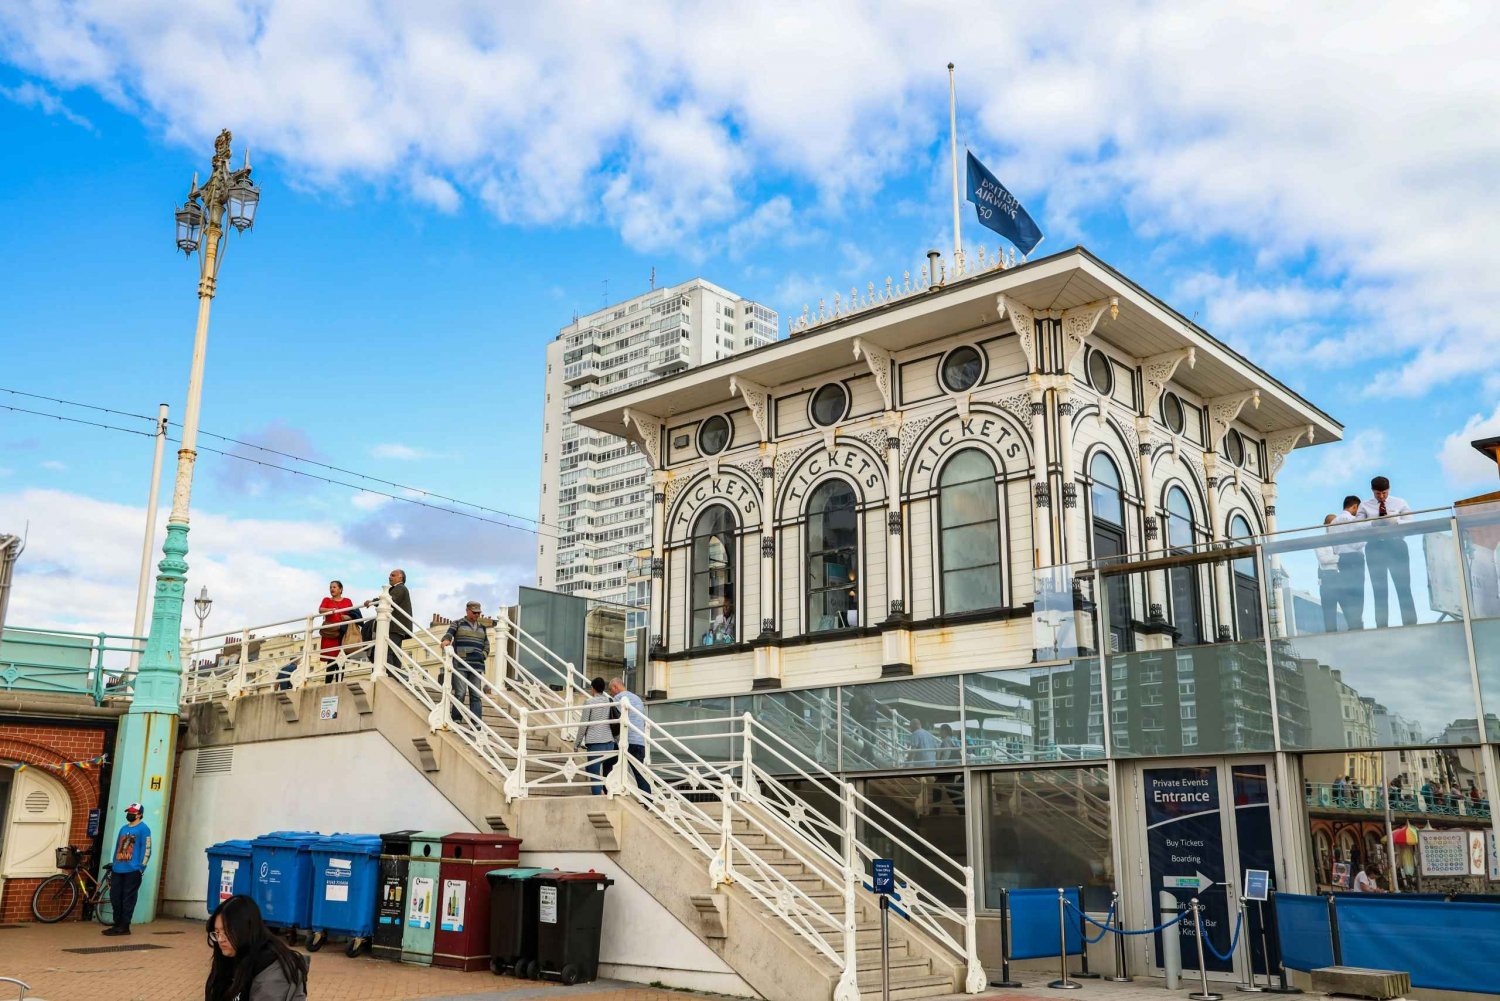 Brighton: Royal Resort Adventure - et byspil med ledetråde